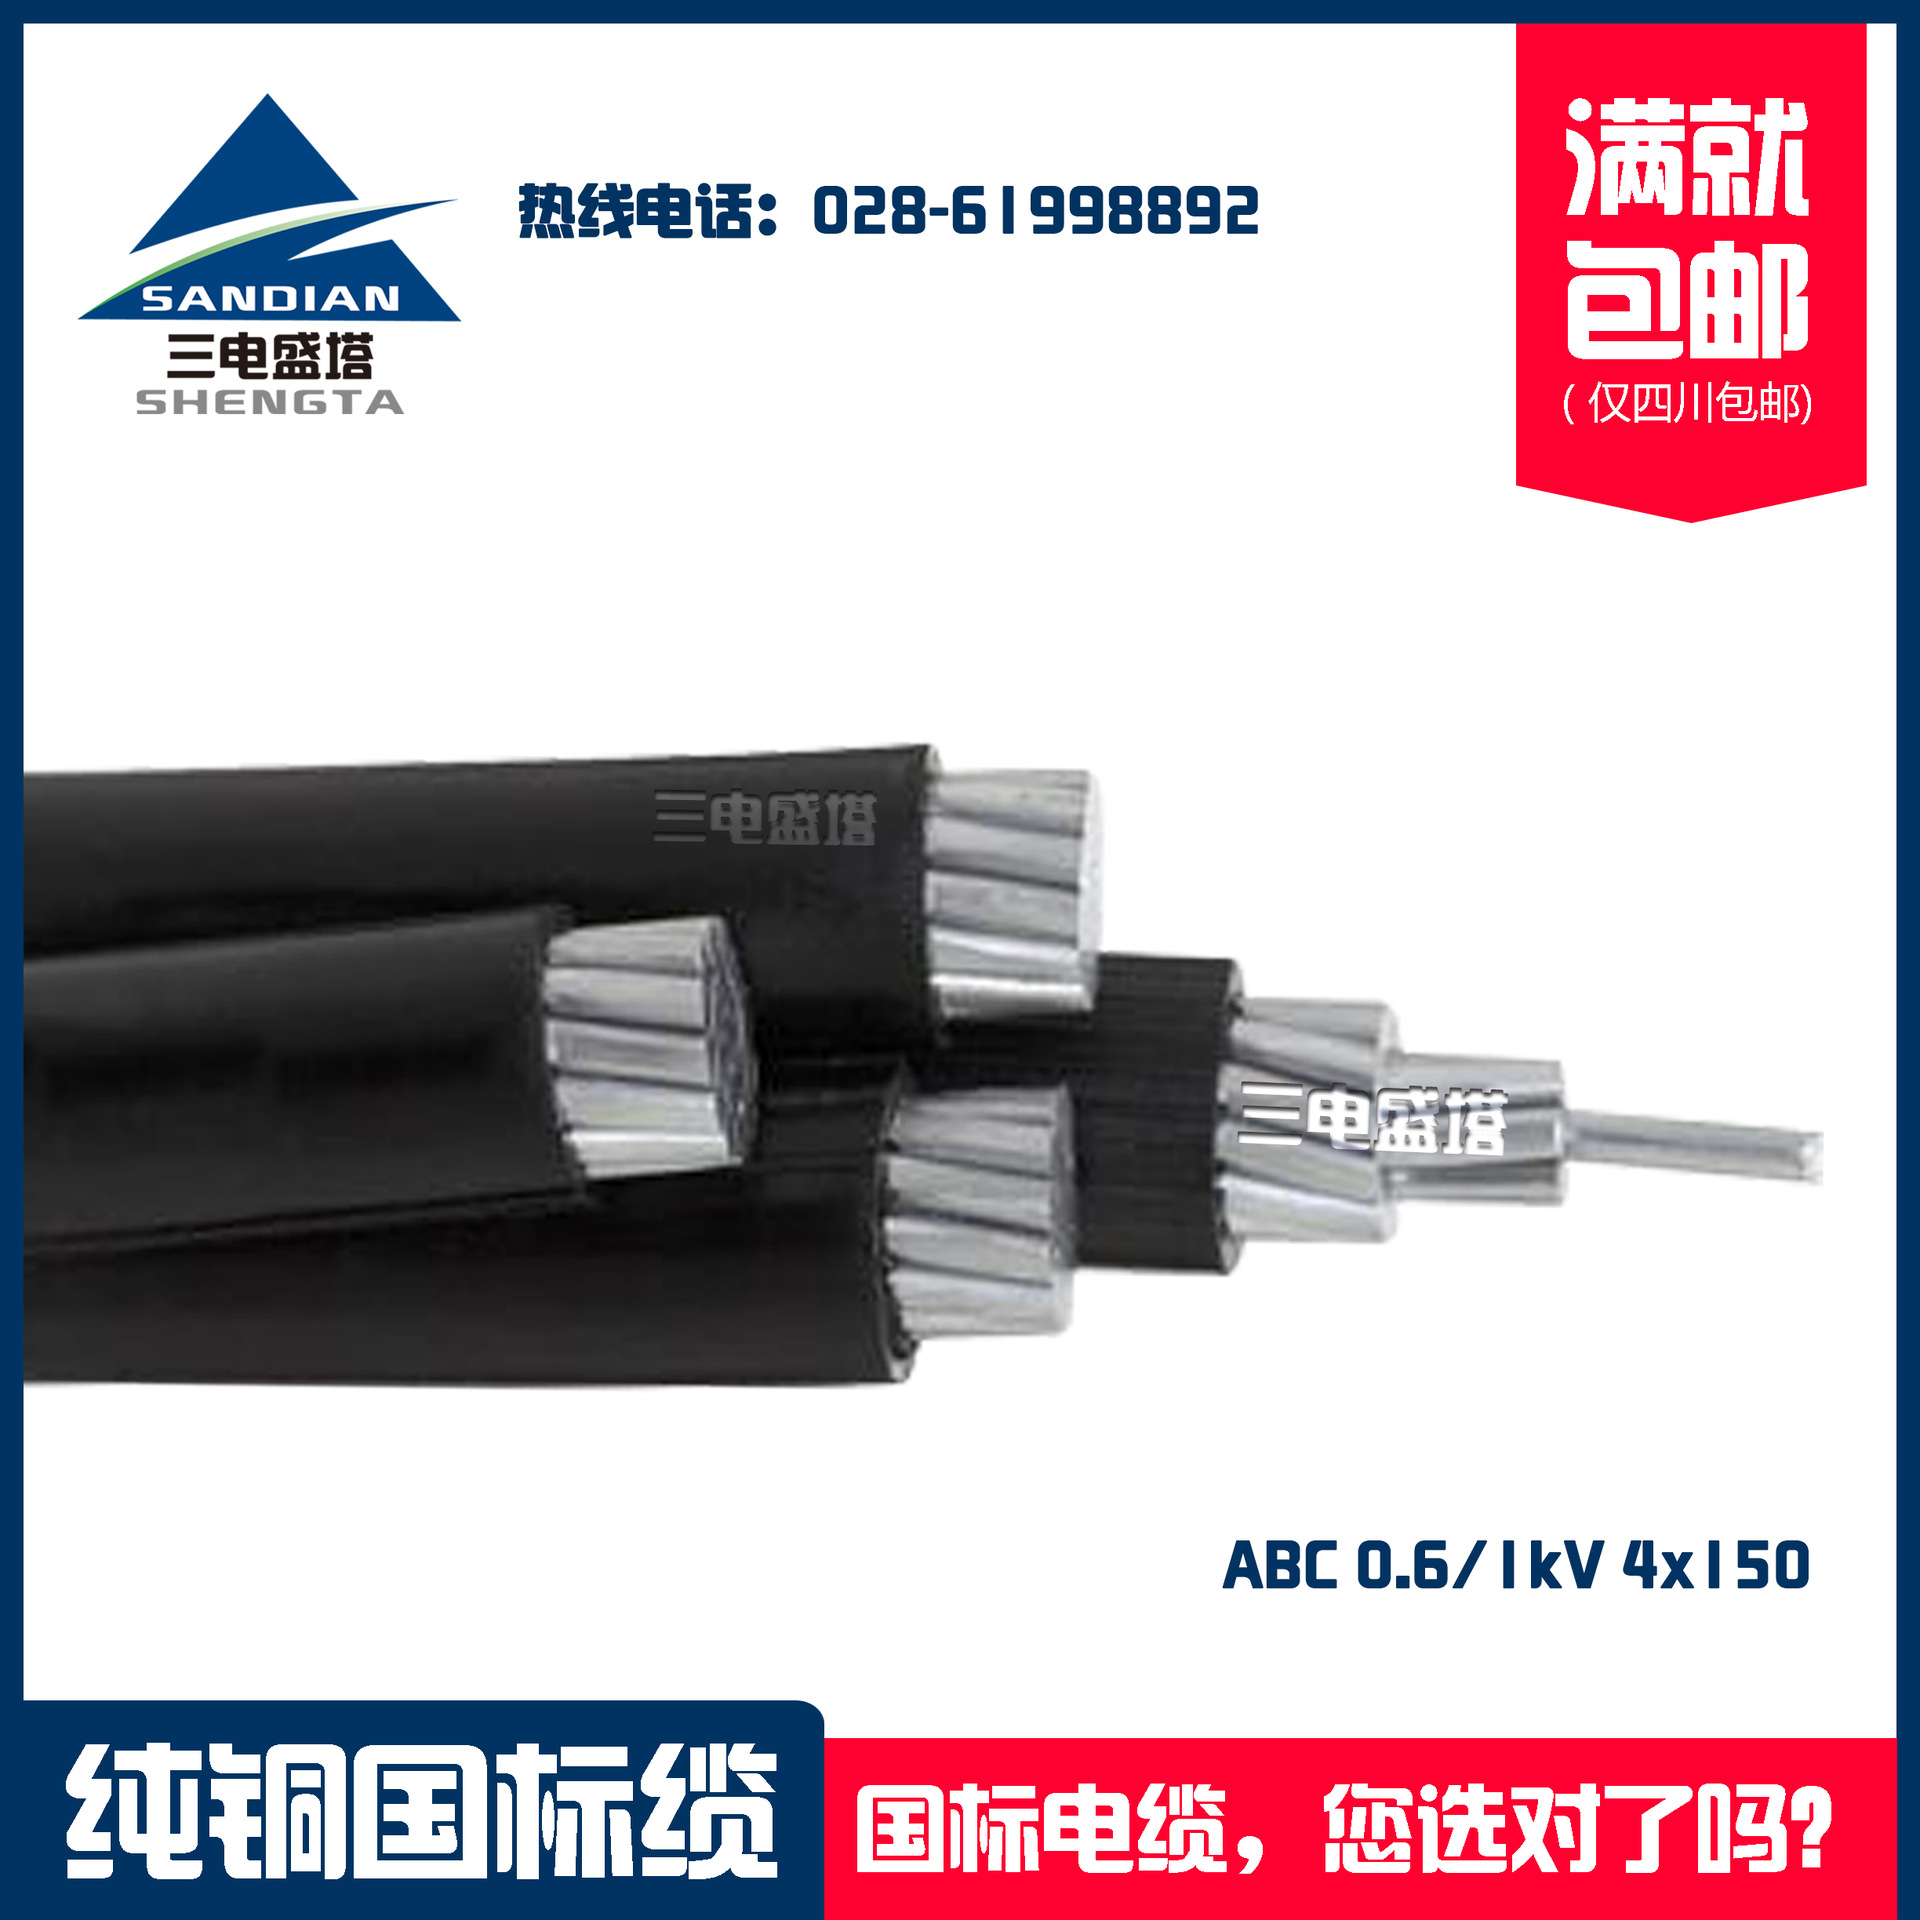 三电盛塔 架空集束电缆电线 ABC 4x150